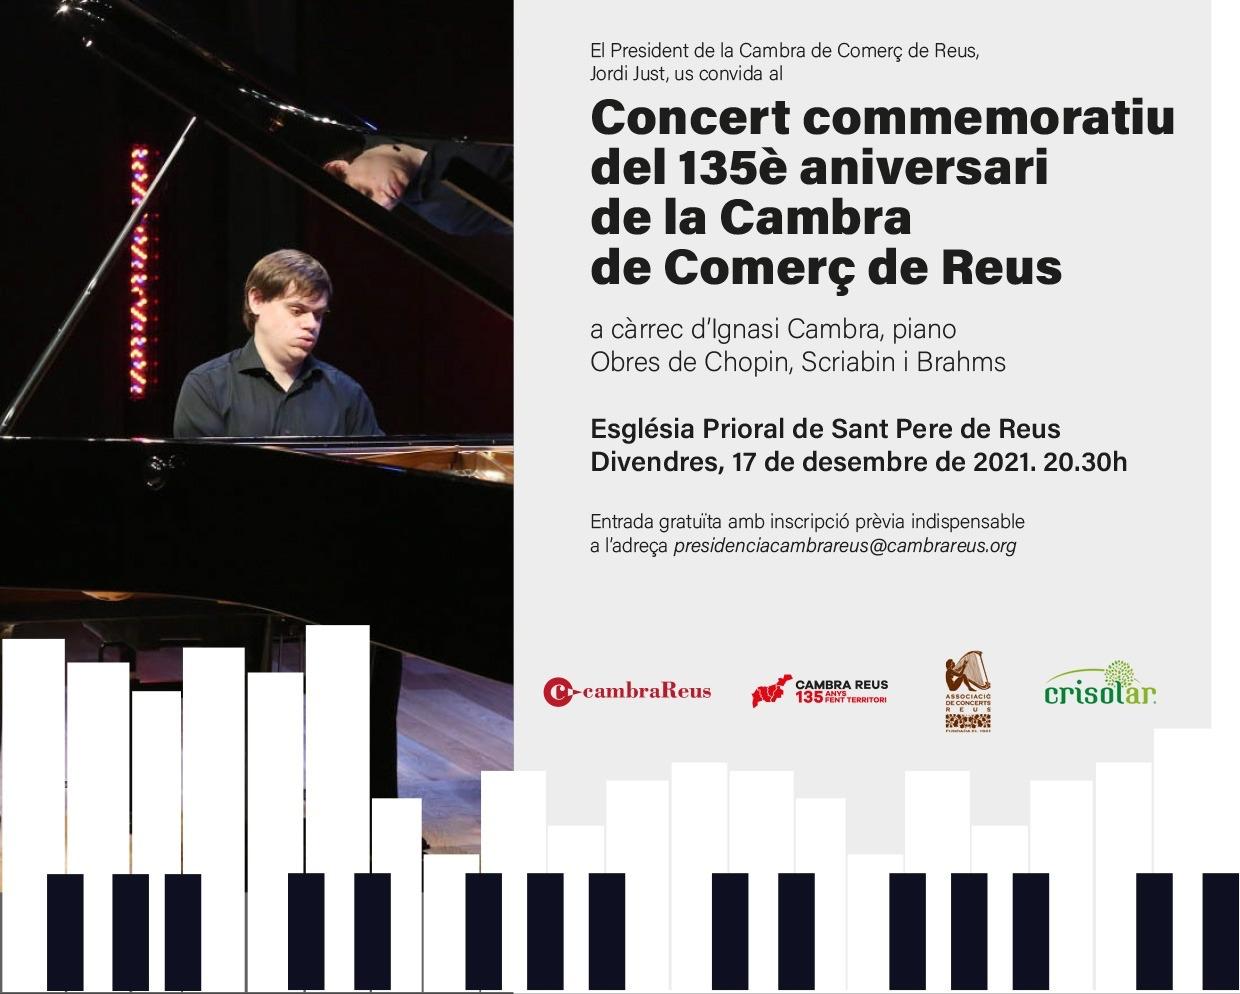 Concert commemoratiu del 135è aniversari de la Cambra de Comerç de Reus